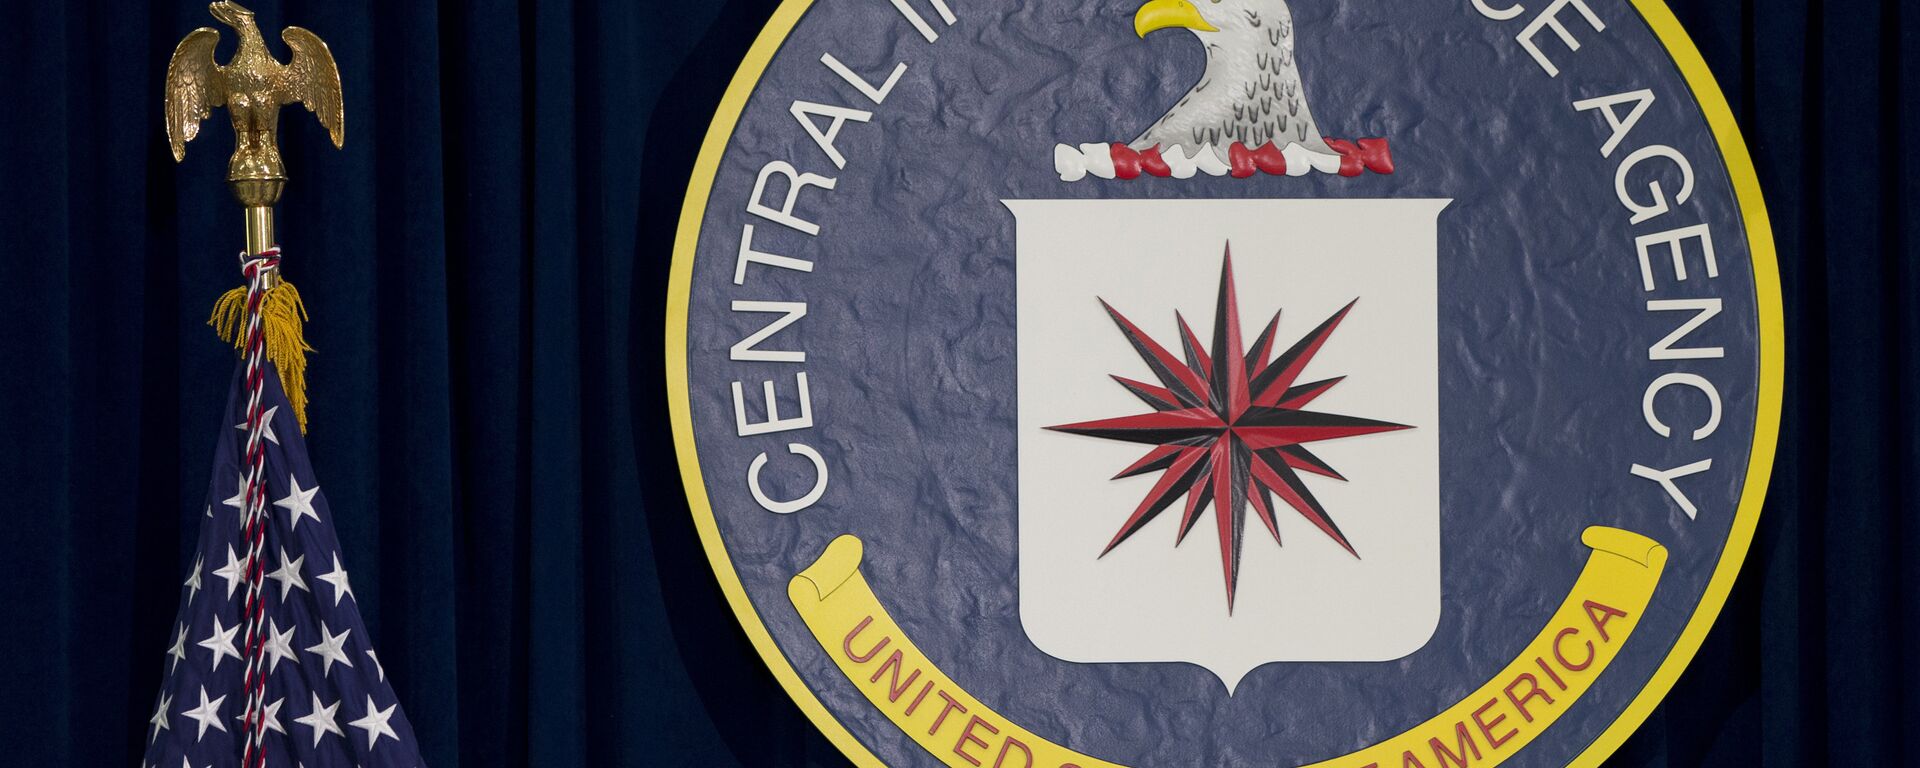 Emblema da CIA em sua sede em Langley, Virgínia, EUA - Sputnik Brasil, 1920, 24.01.2020